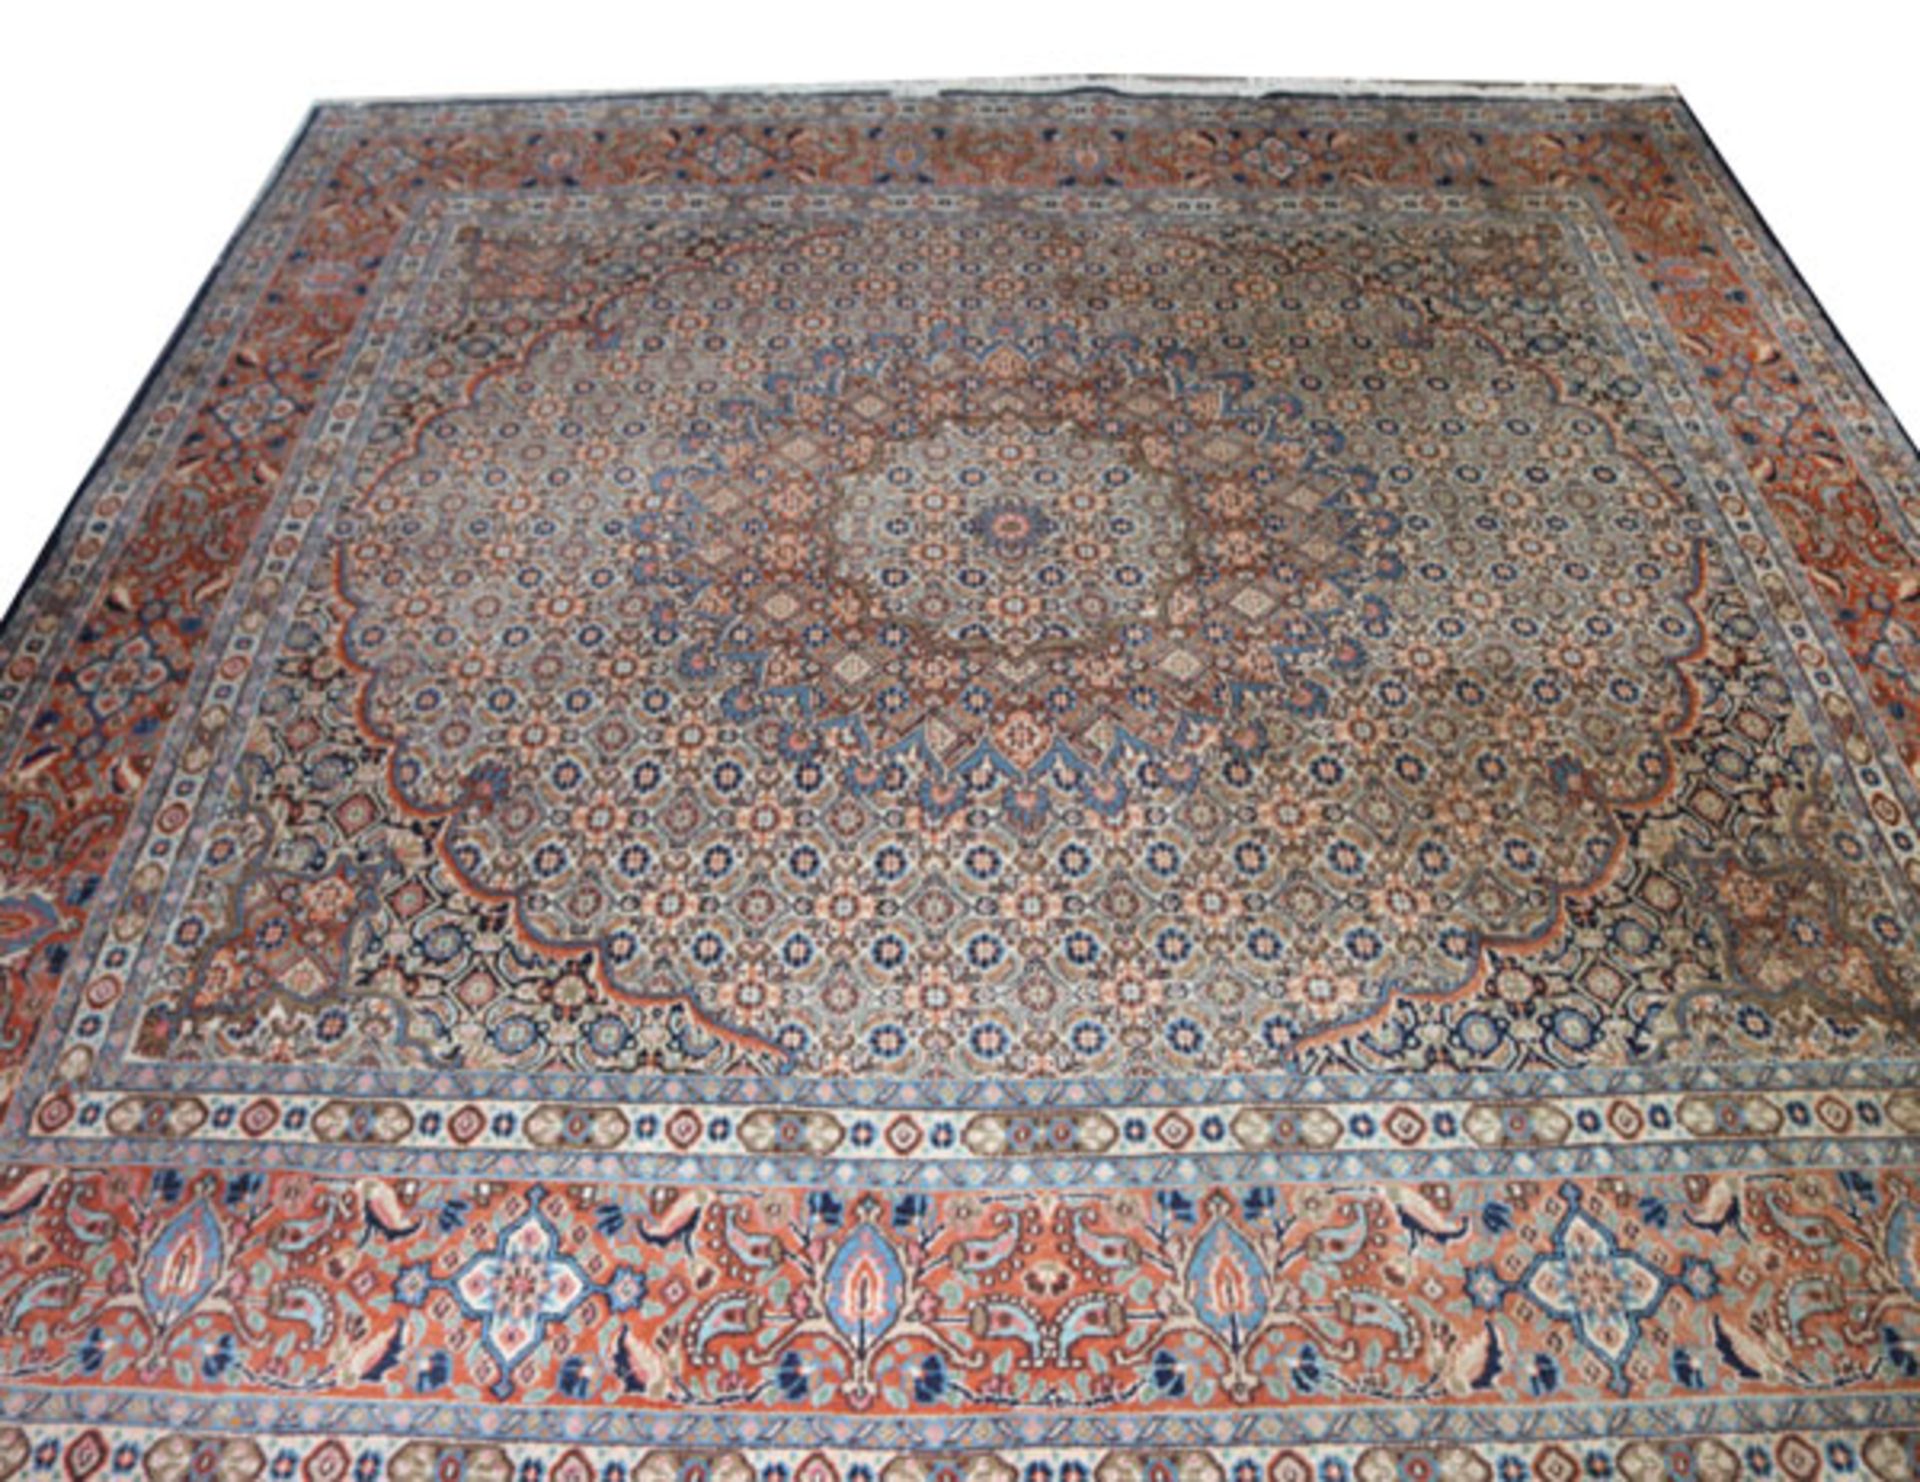 Teppich, Wiss, rot/blau/bunt, starke Gebrauchsspuren, teils fleckig, 255 cm x 240 cm